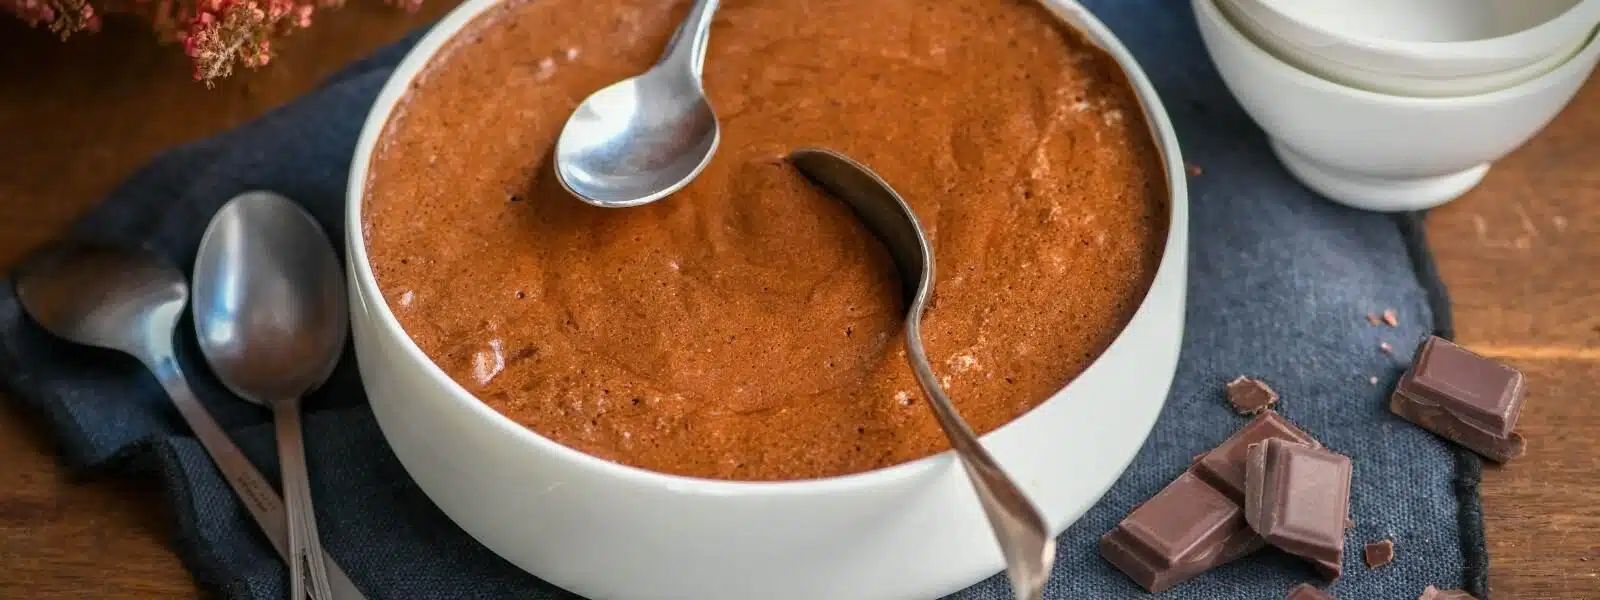 Mousse au chocolat vegan à l'aquafaba - Primevere